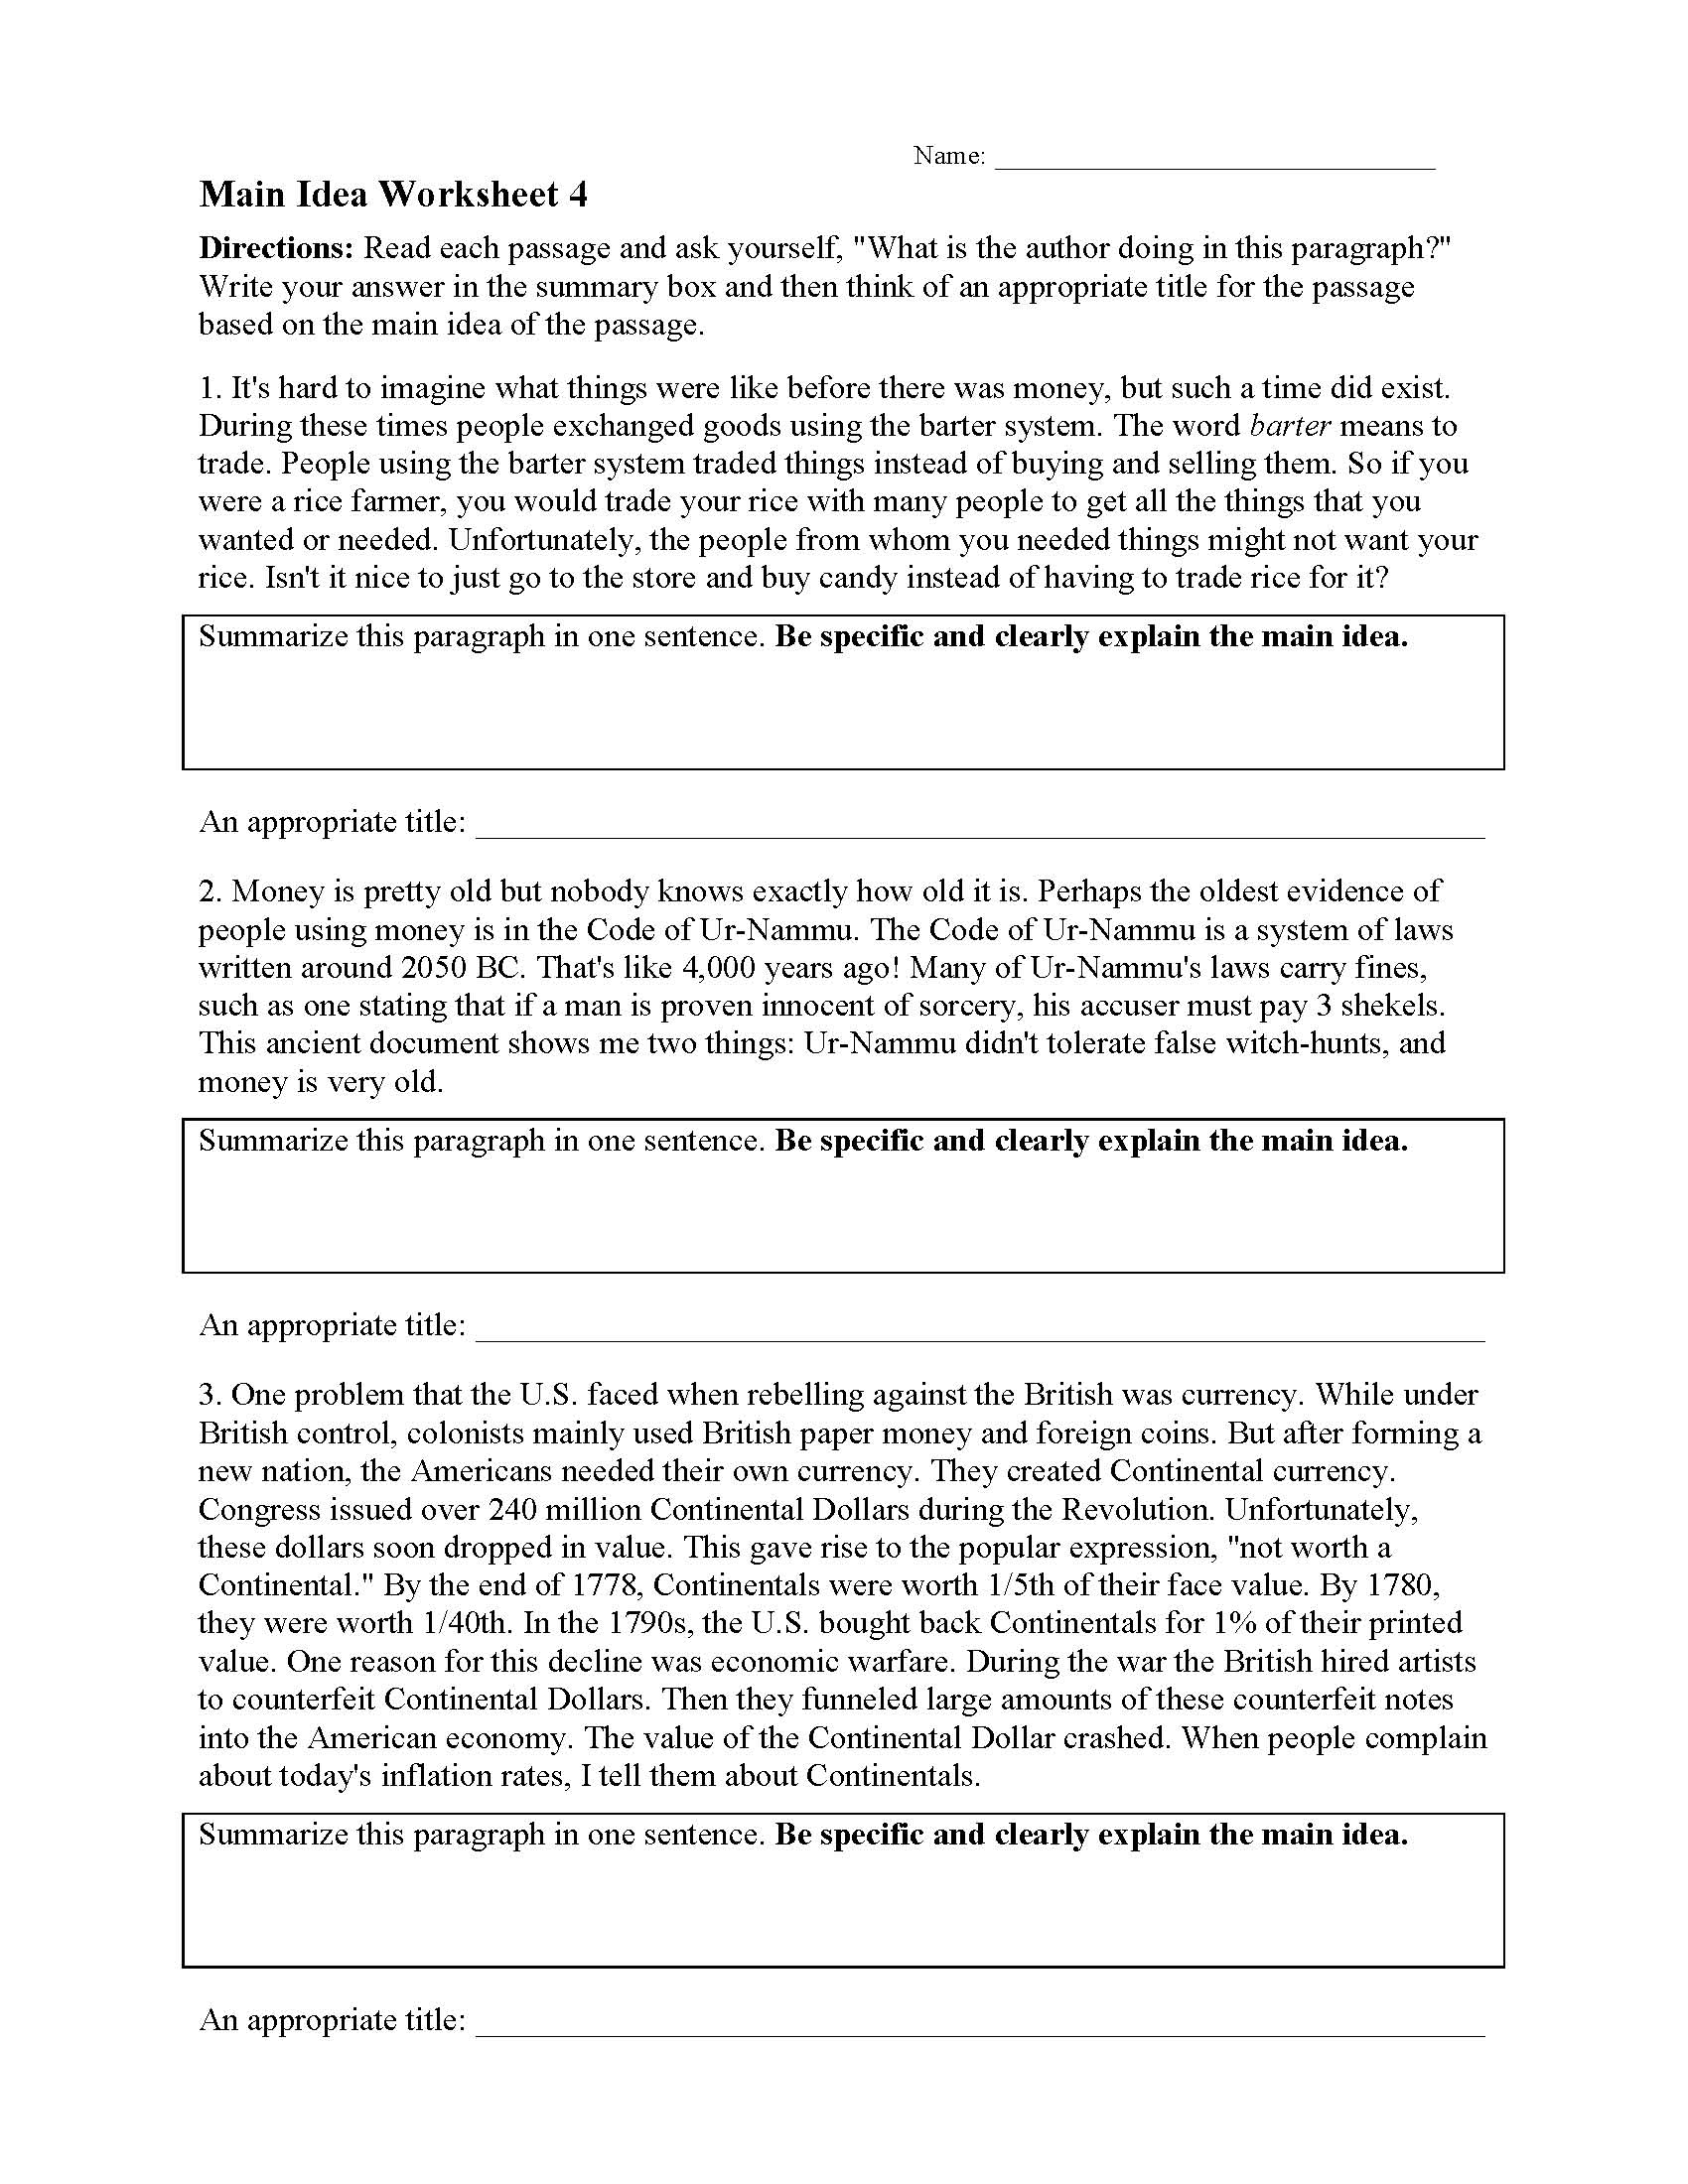 Main Idea Worksheet 22  Reading Activity With Main Idea Worksheet 4